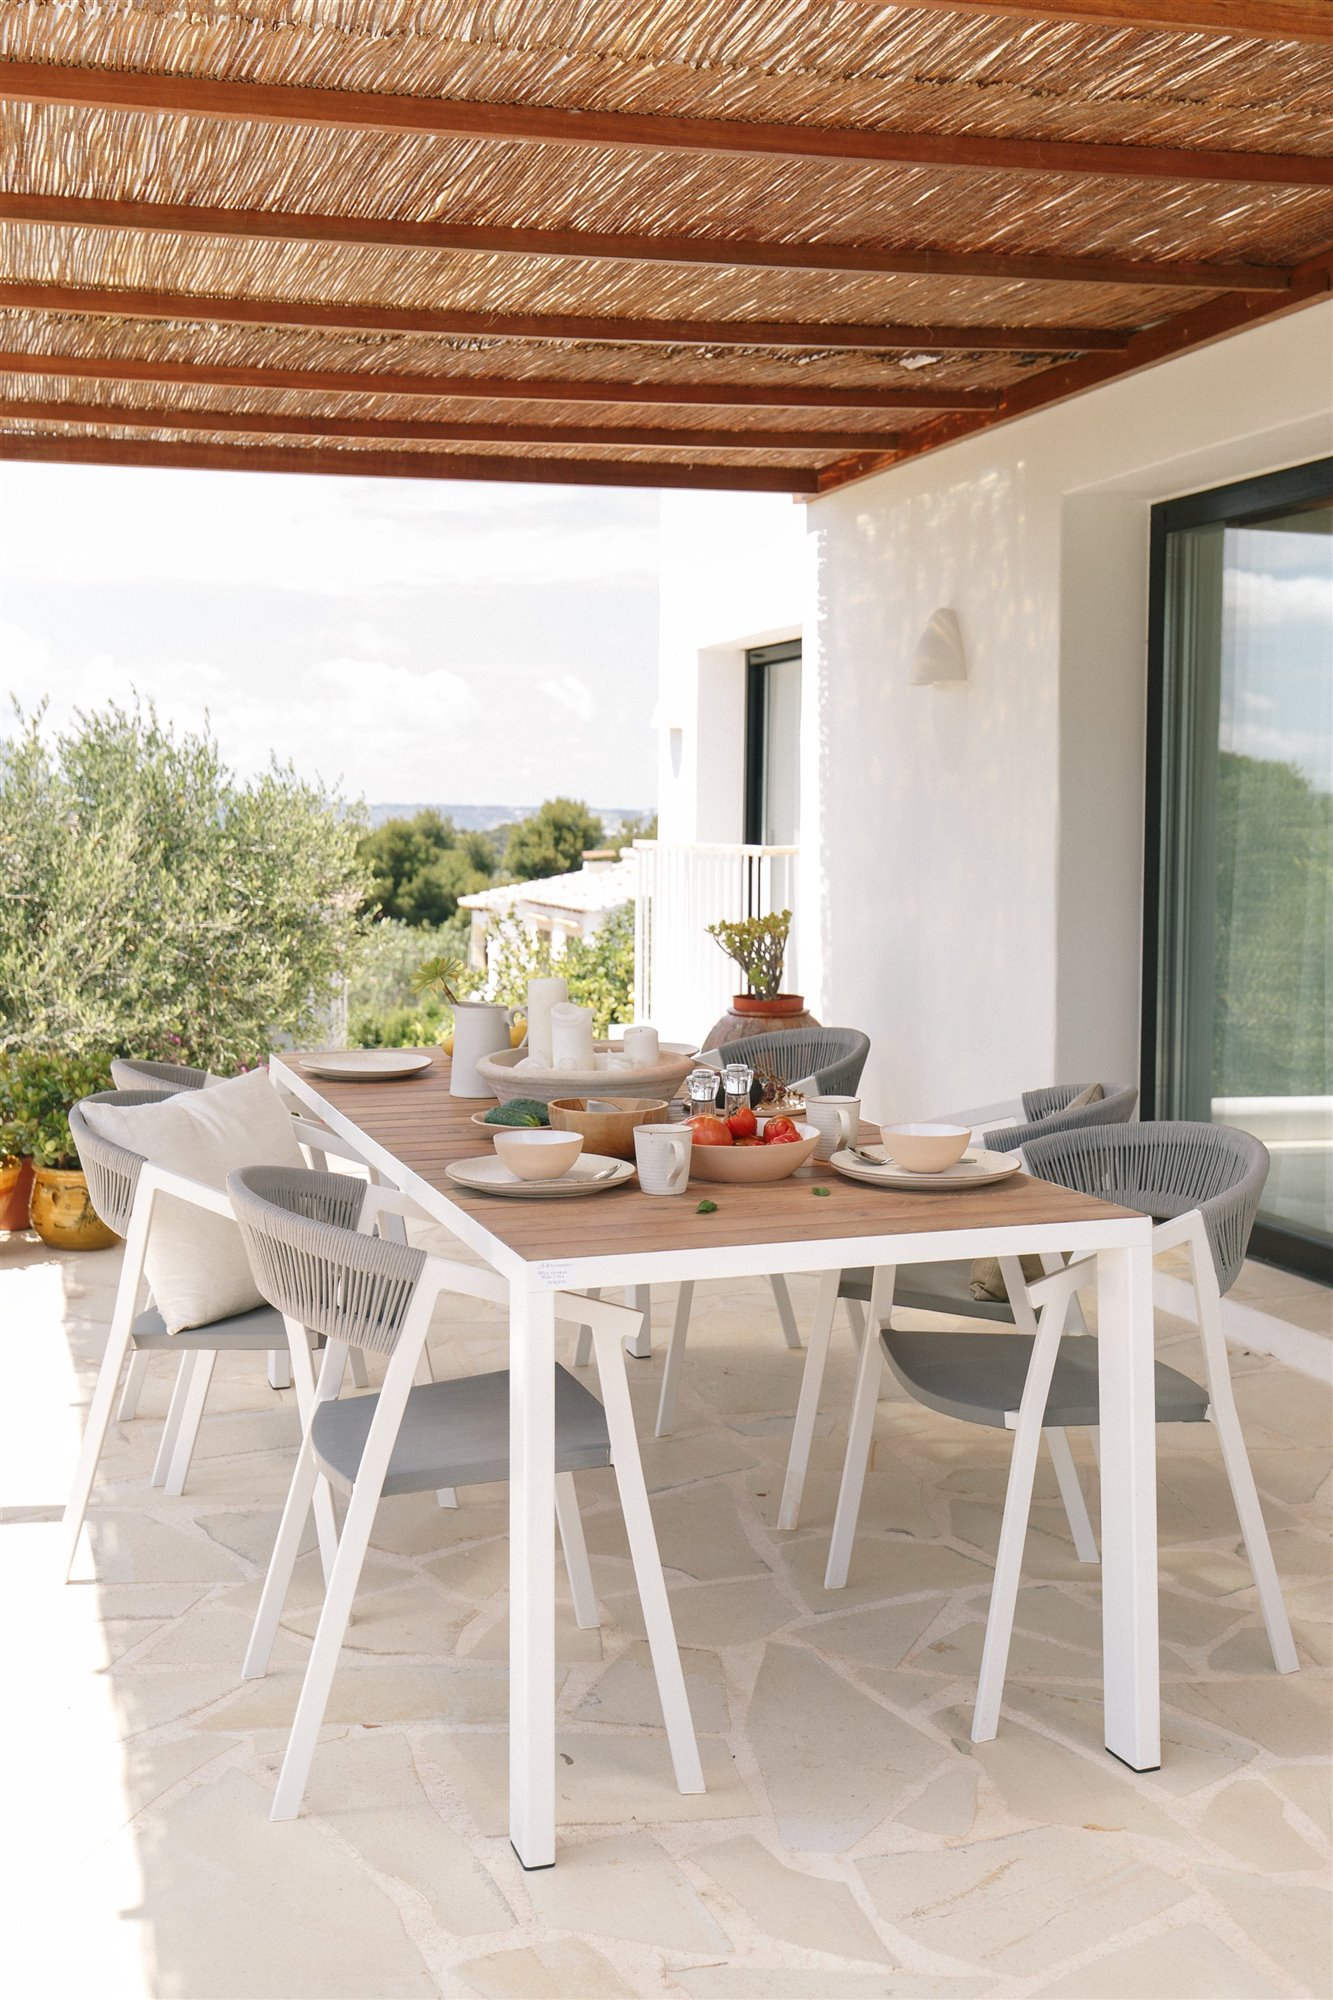 Casa moderna mediterránea con piscina porche comedor exterior